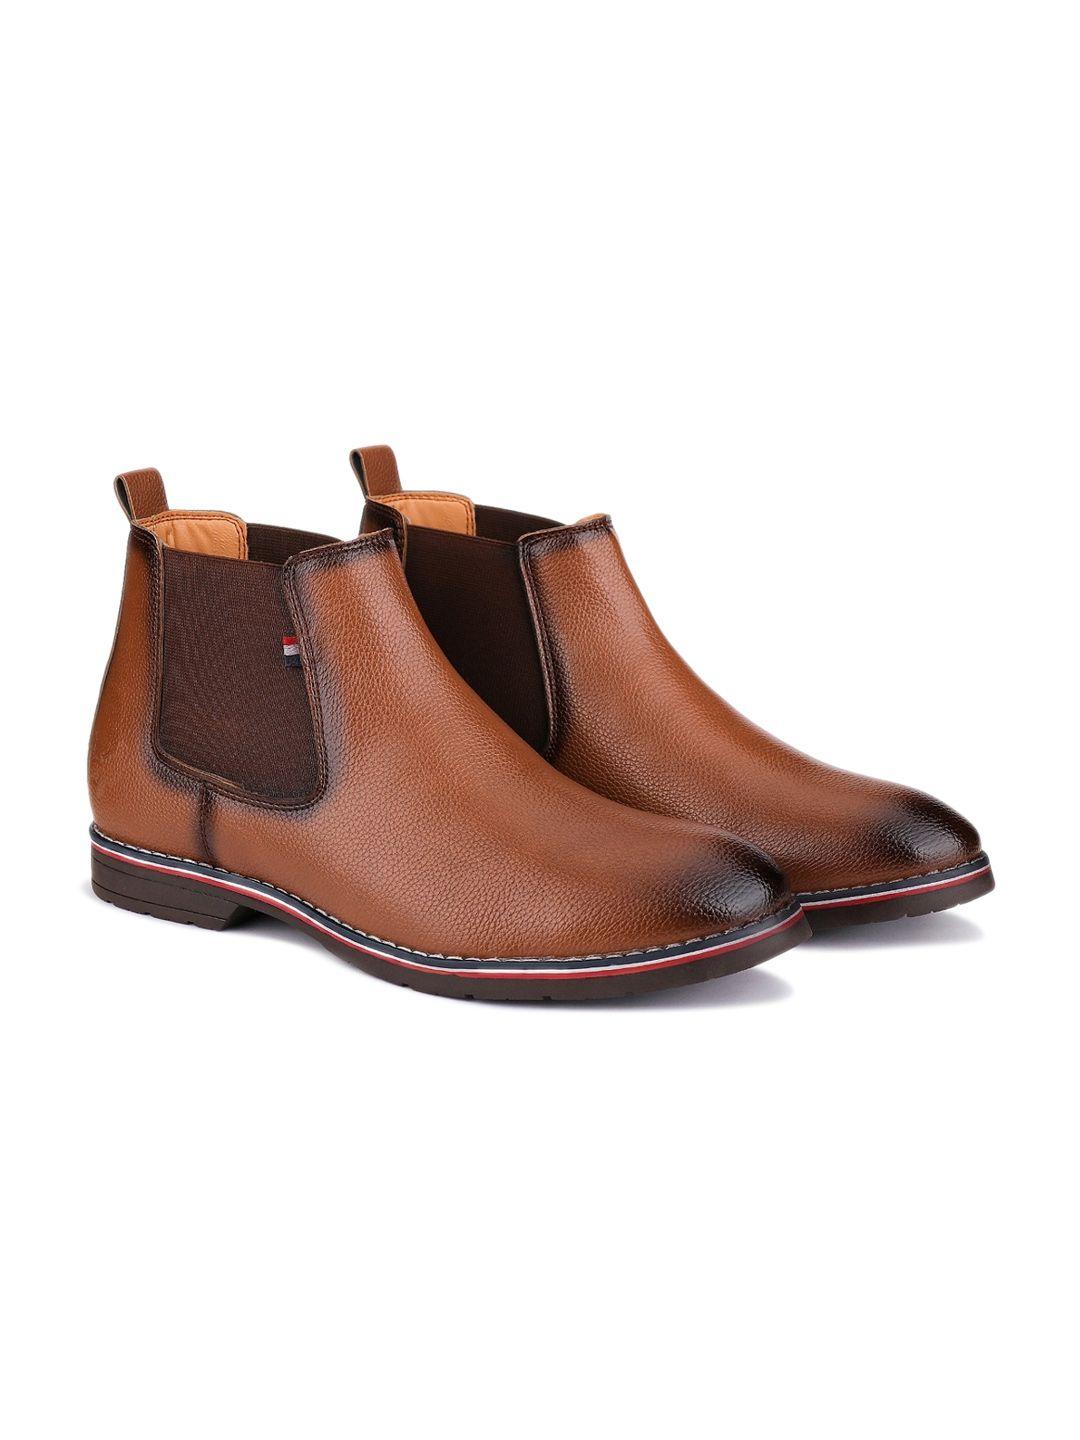 bersache-men-lightweight-leather-chelsea-boots